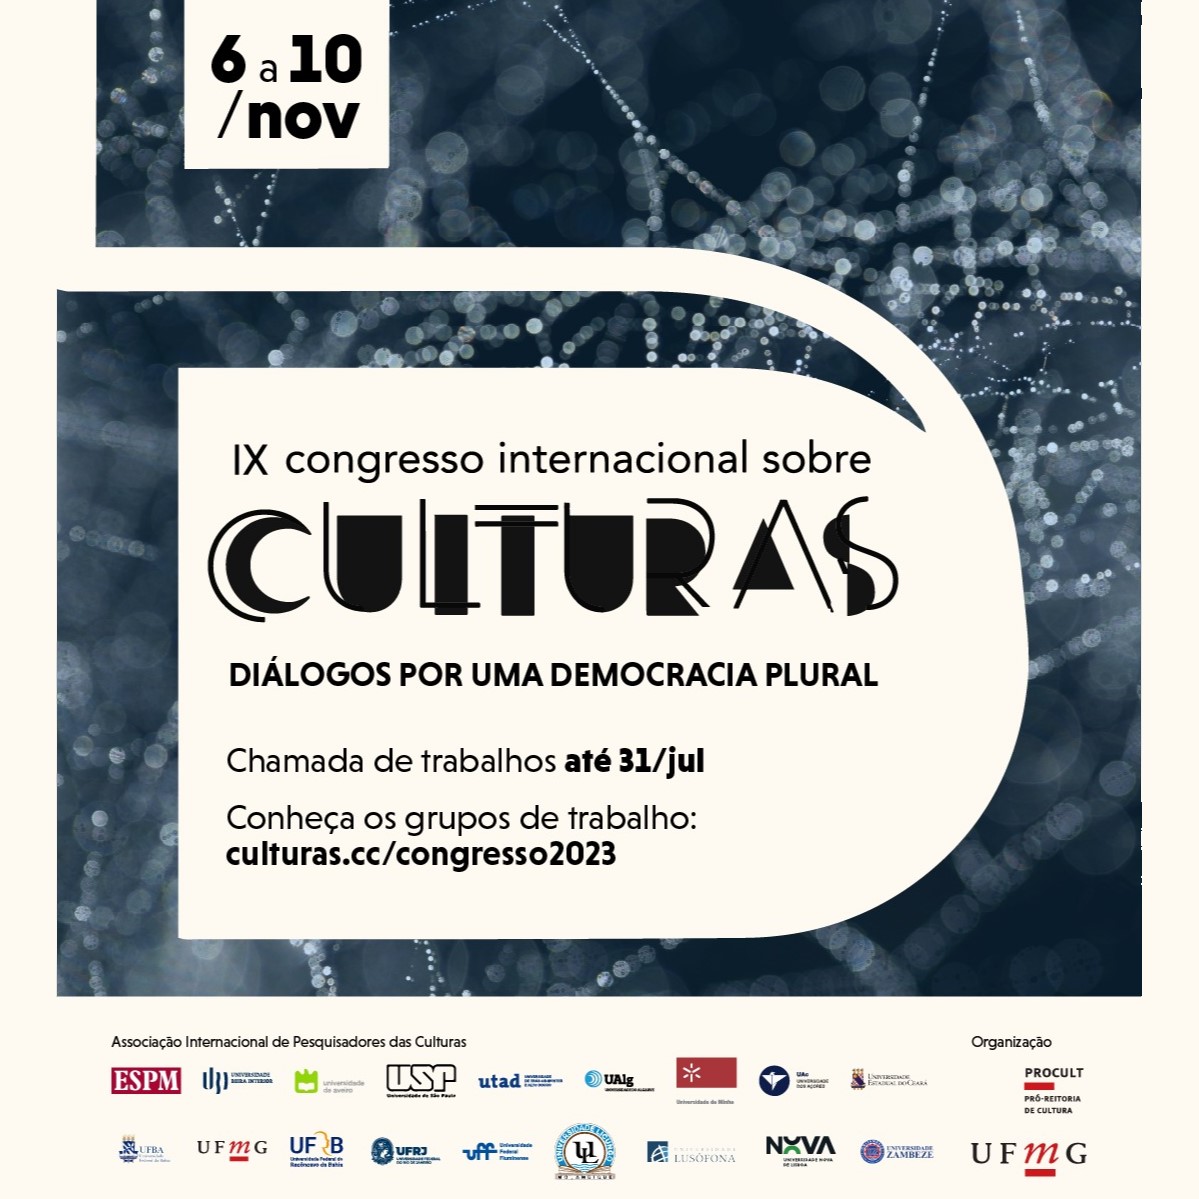 IX Congresso Internacional sobre Culturas prorroga prazo para seleção de trabalhos até 31 de julho